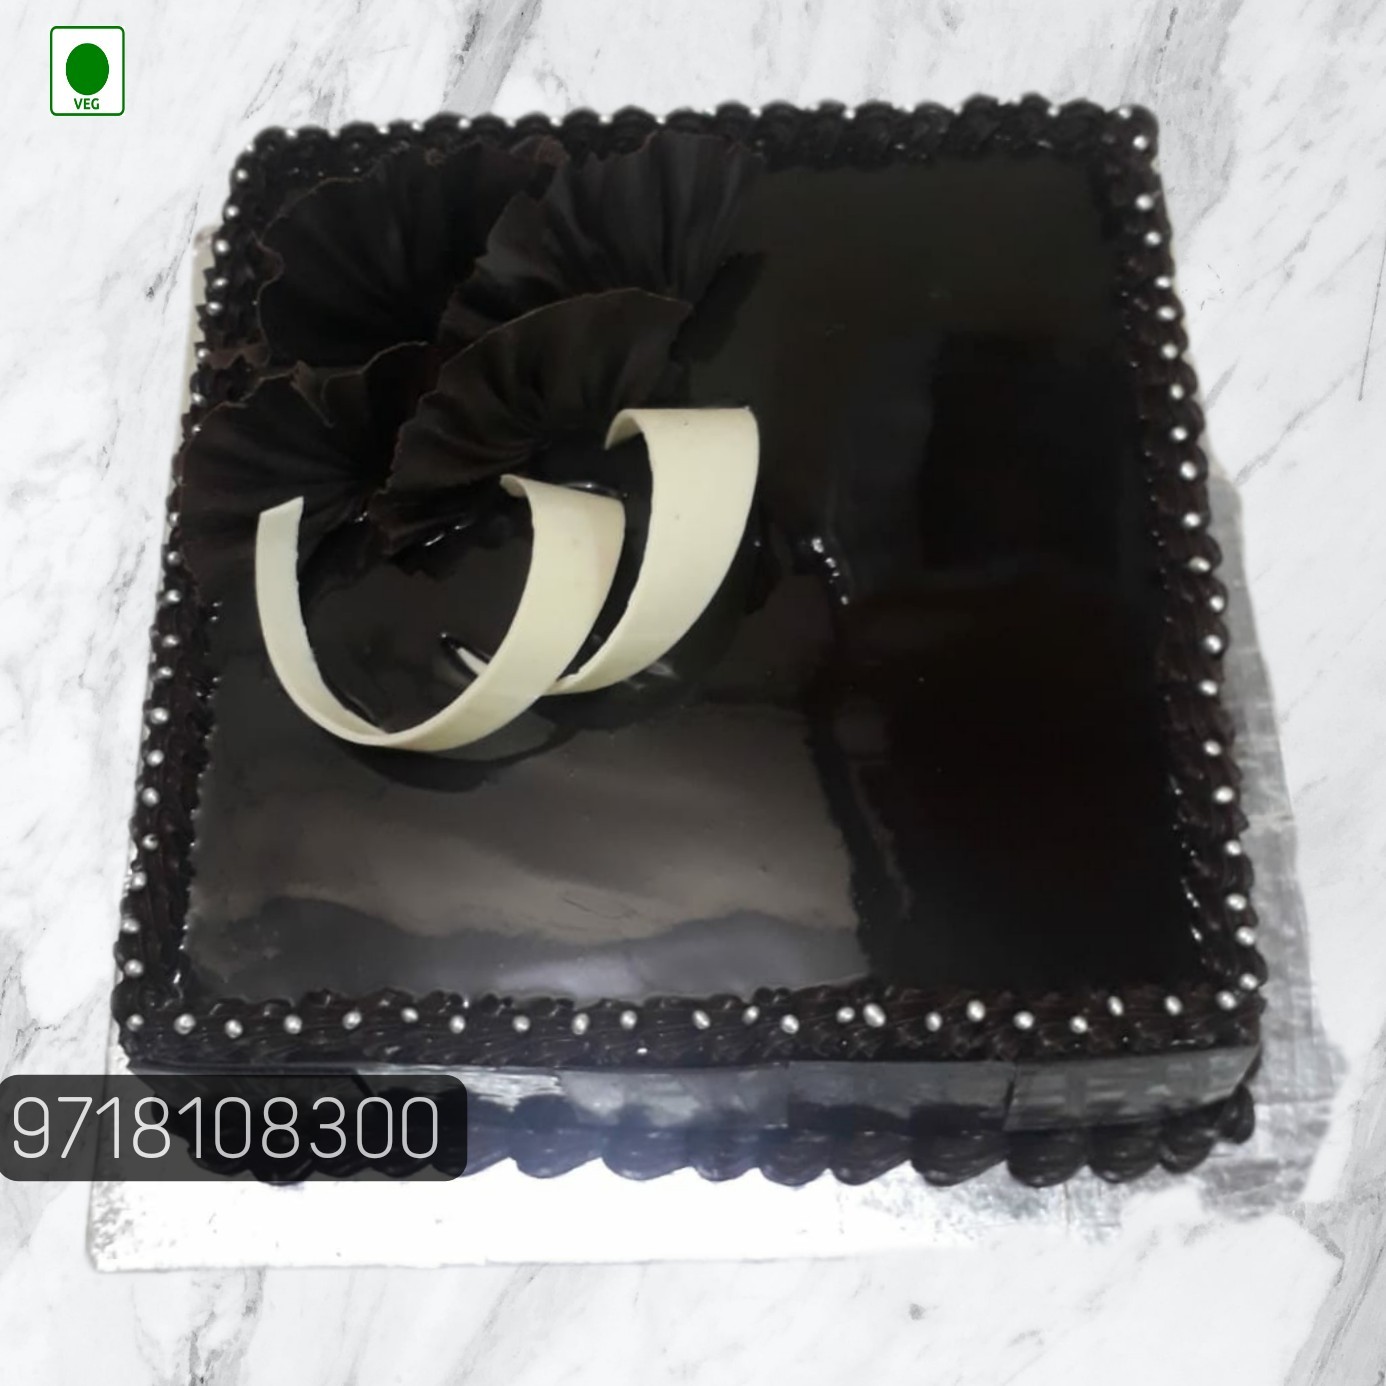 Black Forest Square Shape Cake - clickere – Clickere